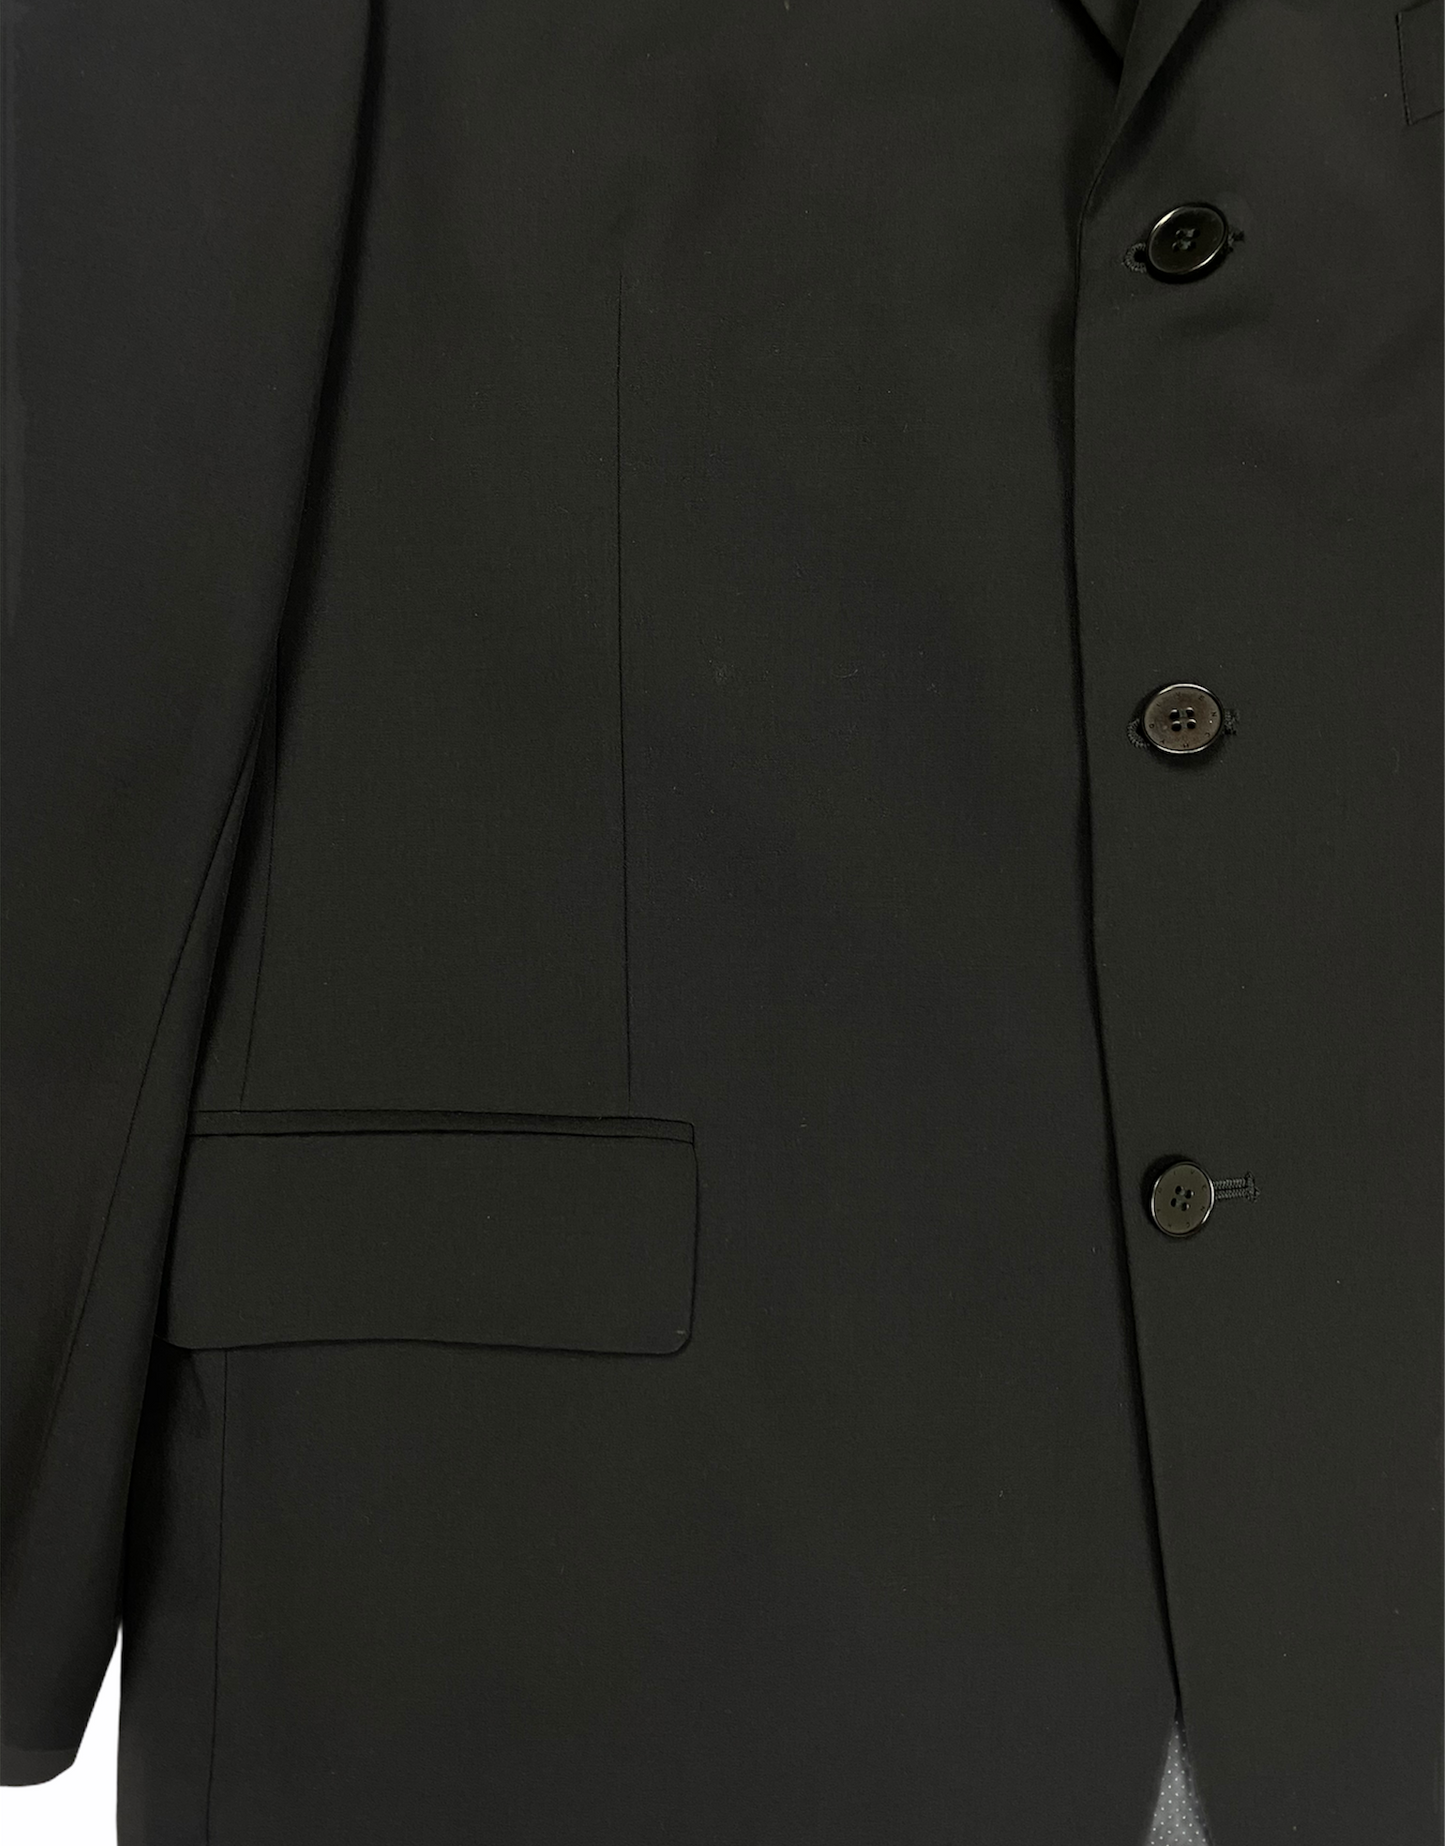 Veste de blazer GIVENCHY noir, jamais porté sans étiquette.